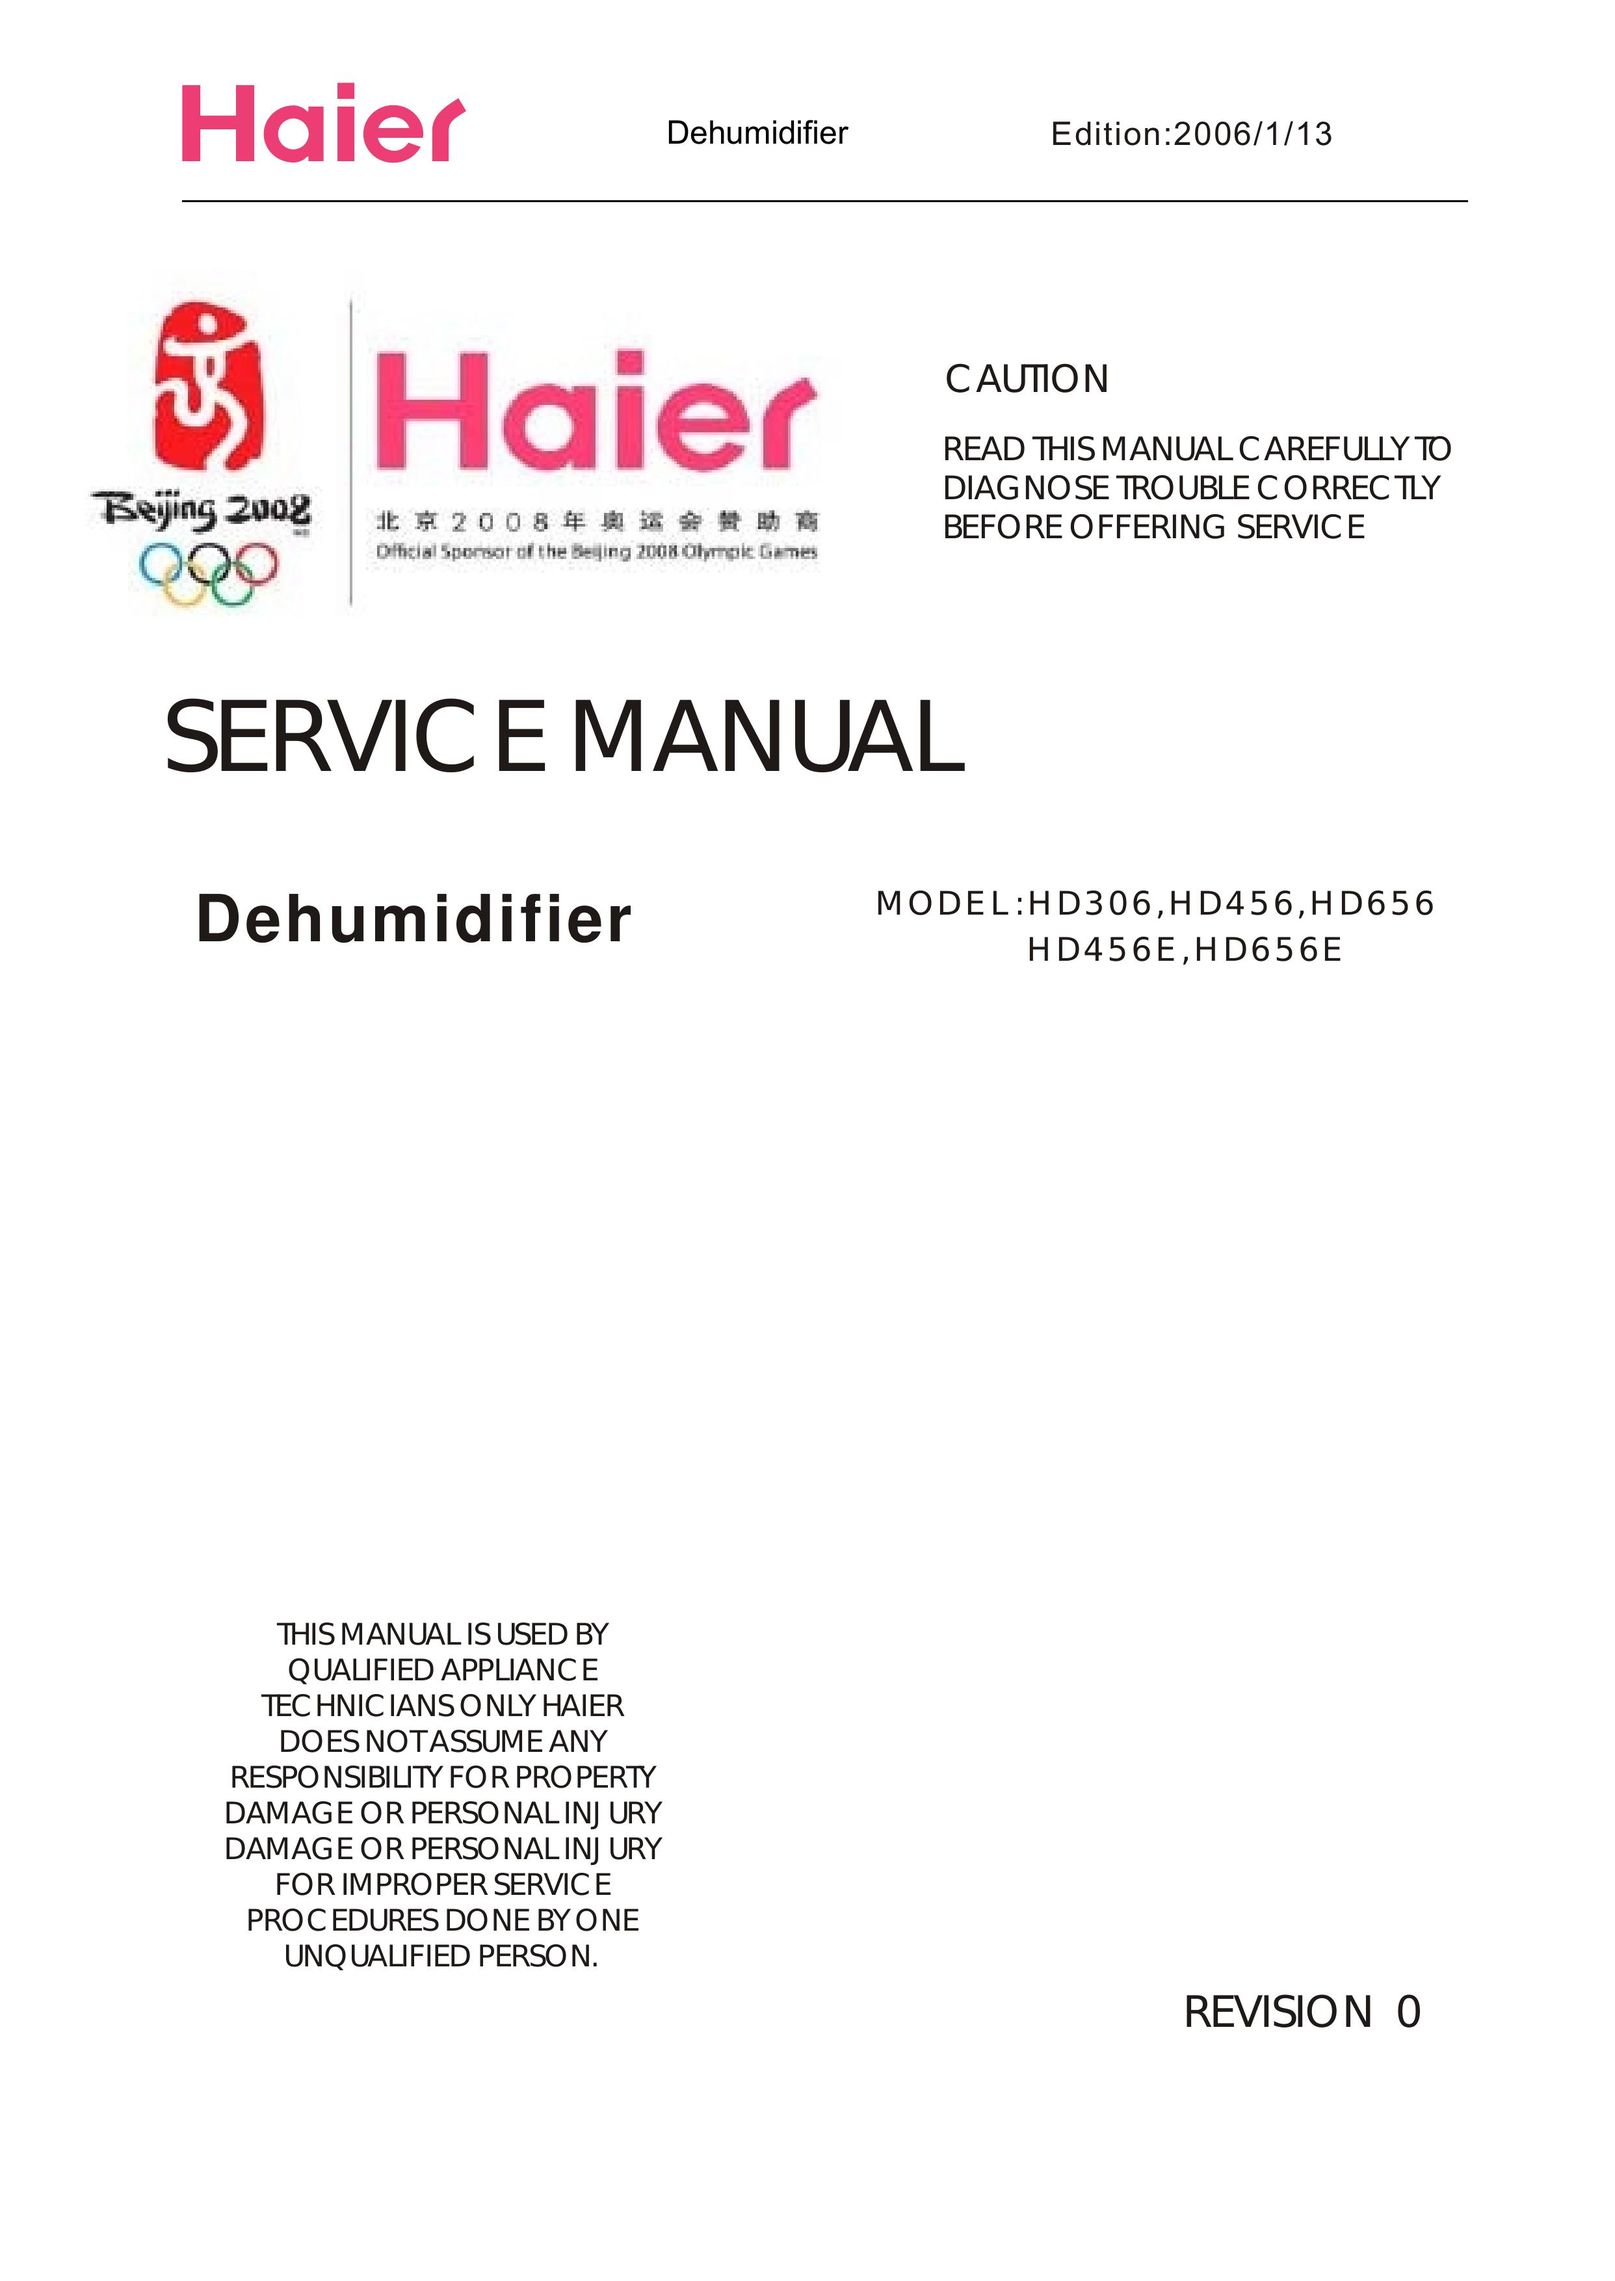 Haier HD656, HD456E Dehumidifier User Manual